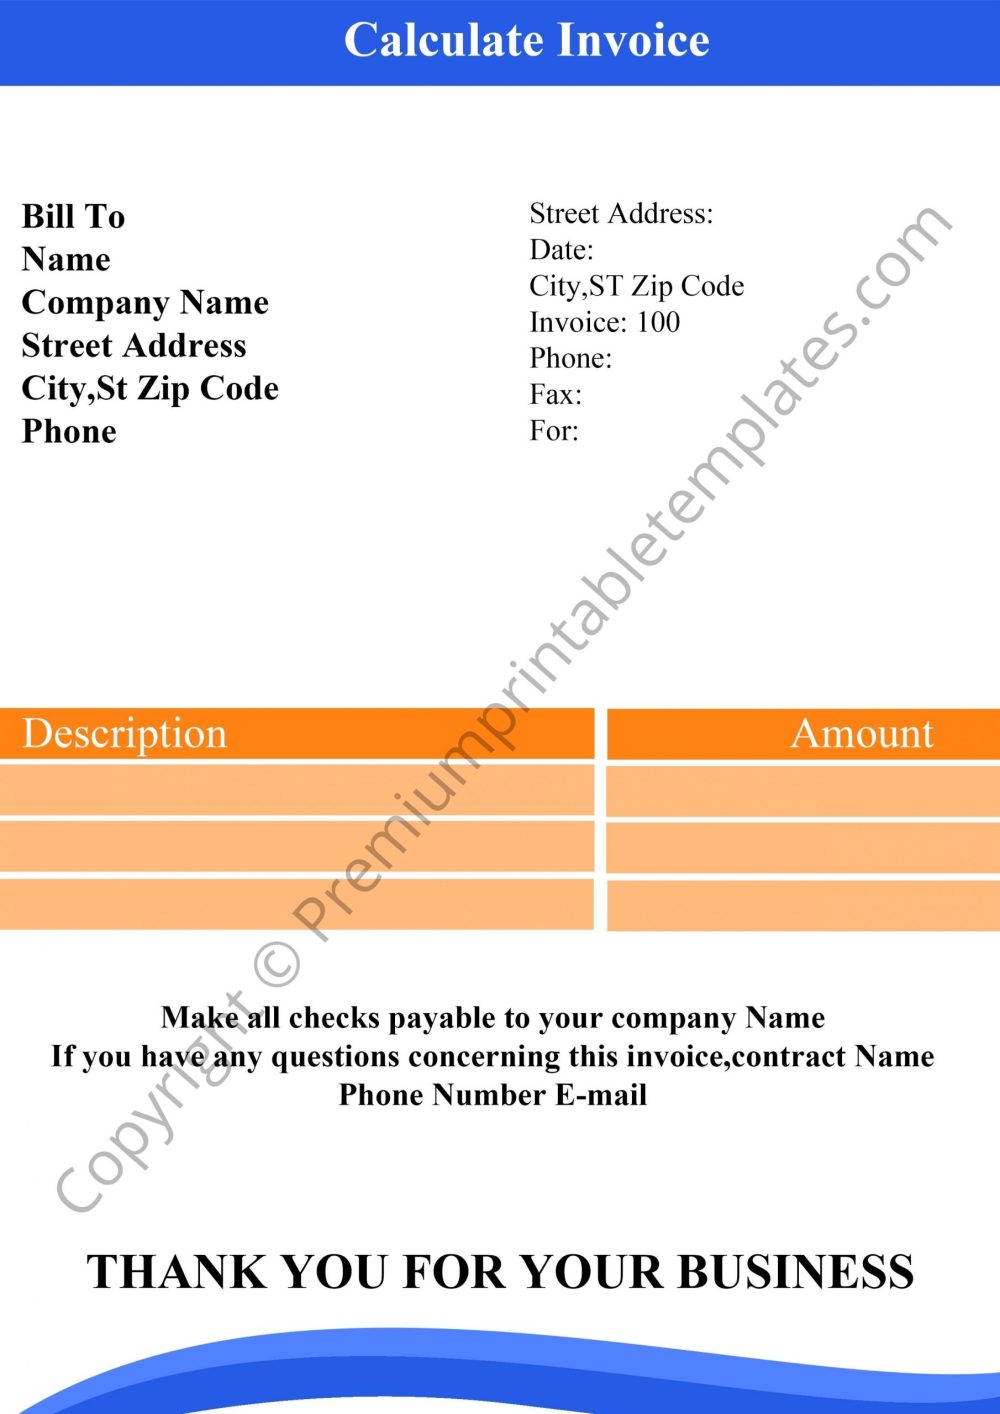 Calculate Invoice PDF